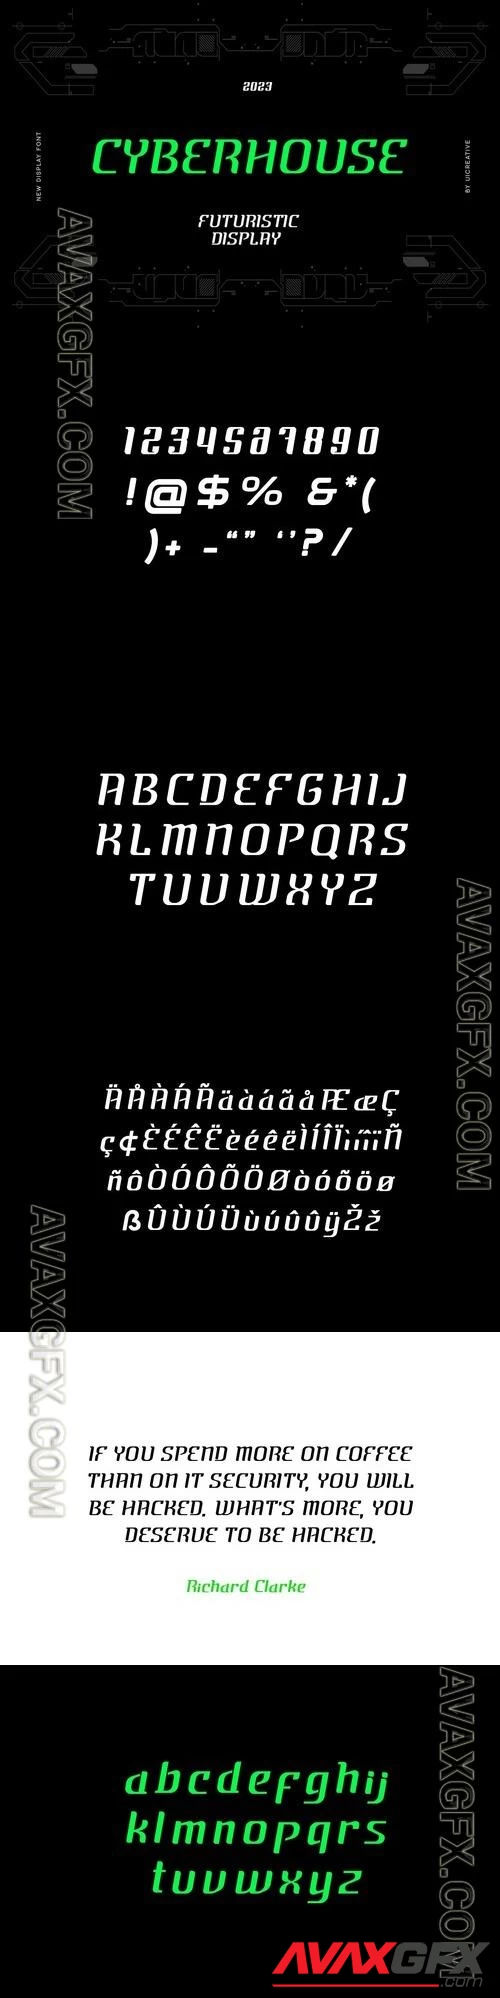 Cyberhouse Futuristic Display Font [OTF, TTF]